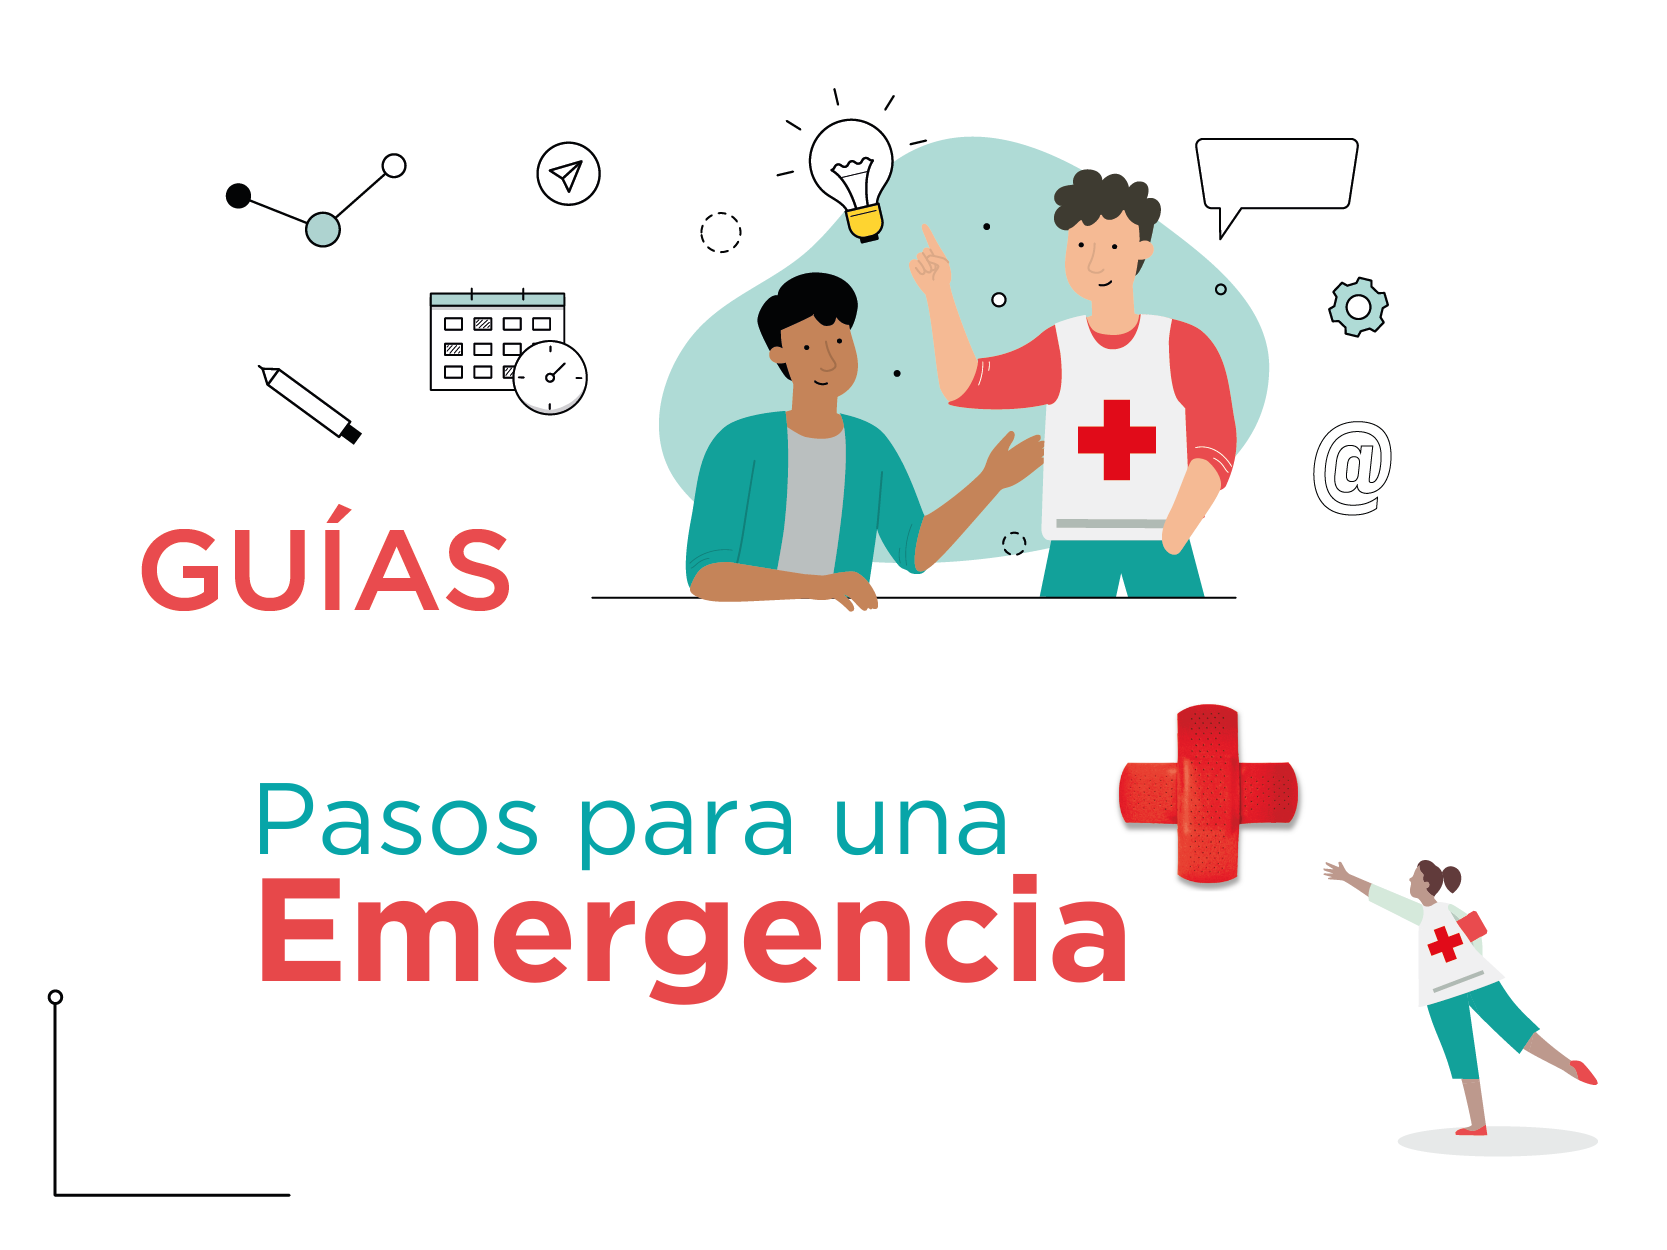 ¿Cómo actuar ante una emergencia? 3 pasos fundamentales que debés saber